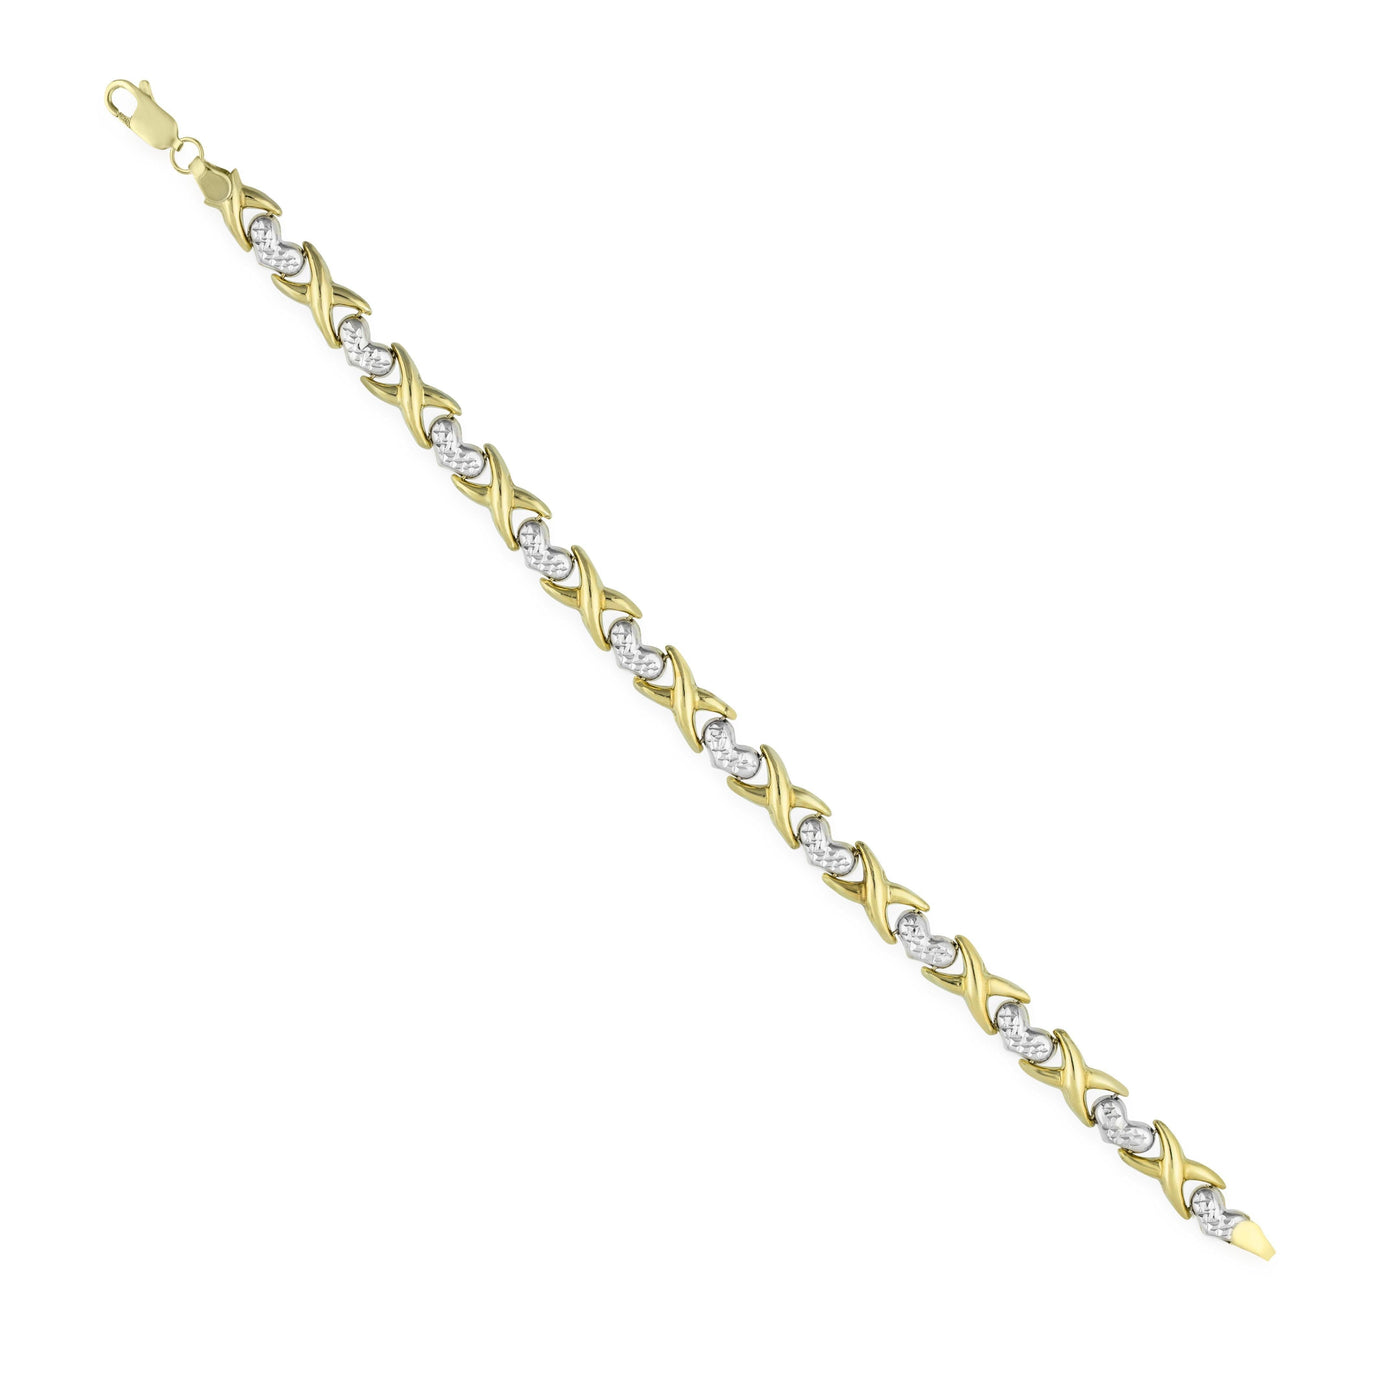 6.5mm Diamond Cut Heart & Kisses Bracelet 14K Yellow White Gold - bayamjewelry